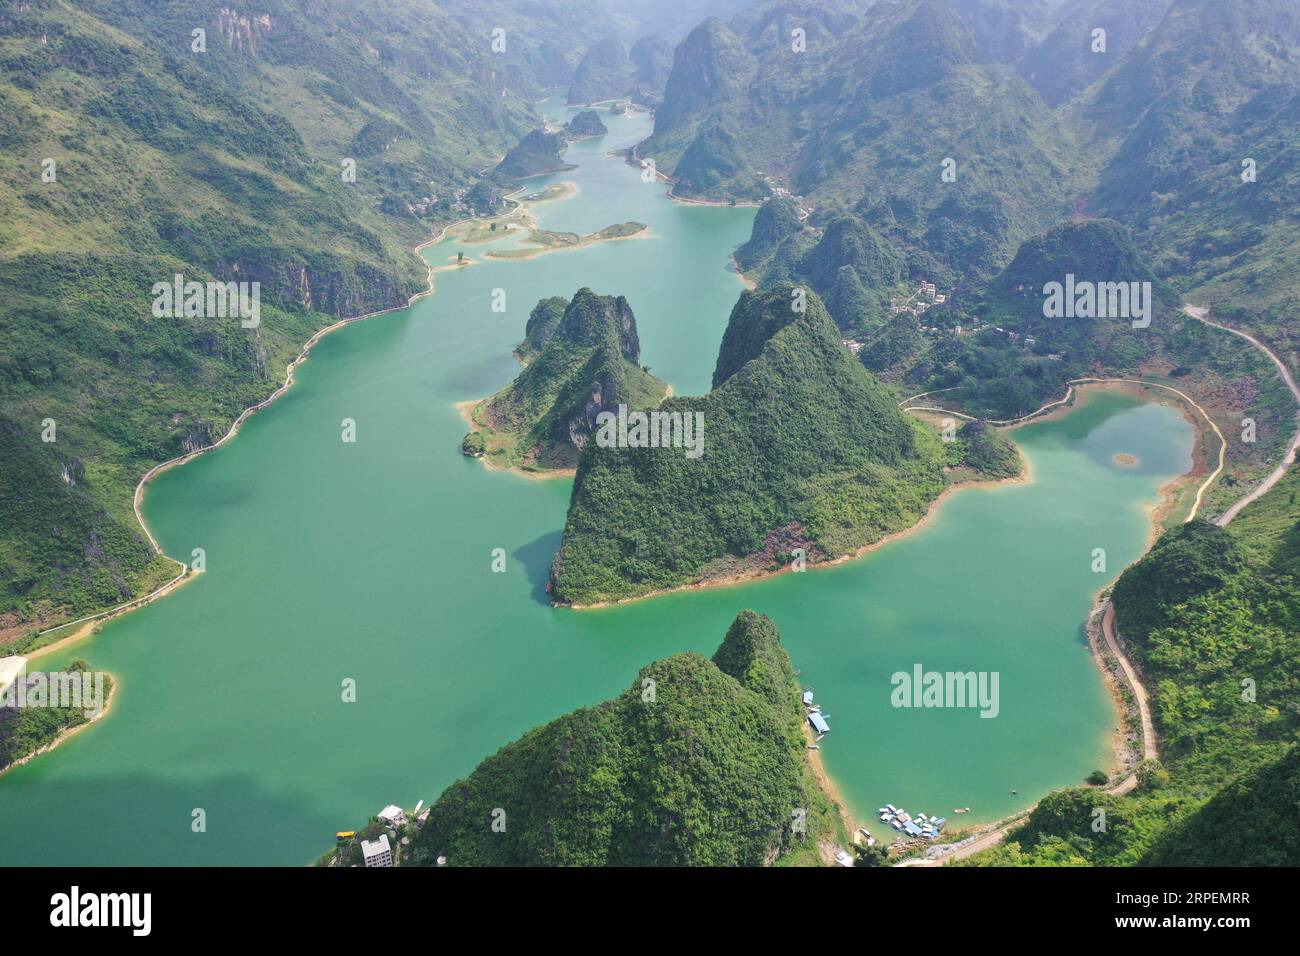 (190901) -- LINGYUN, 1 septembre 2019 -- une photo aérienne montre le paysage du lac Haokun dans le comté de Lingyun, dans la région autonome de Guangxi Zhuang, dans le sud de la Chine, le 30 août 2019. Lao Ketuan, 40 ans, vit dans le village montagneux de Haokun, un endroit où les transports sont extrêmement médiocres et où les ressources foncières sont rares, ce qui a sérieusement entravé le développement local et a plongé les gens dans la pauvreté. La famille AJO fait partie des ménages pauvres qui vivent ici. En 2016, Lao n’avait cependant jamais rêvé que sa famille puisse sortir de la pauvreté grâce au travail des autorités locales sur la lutte contre la pauvreté Banque D'Images